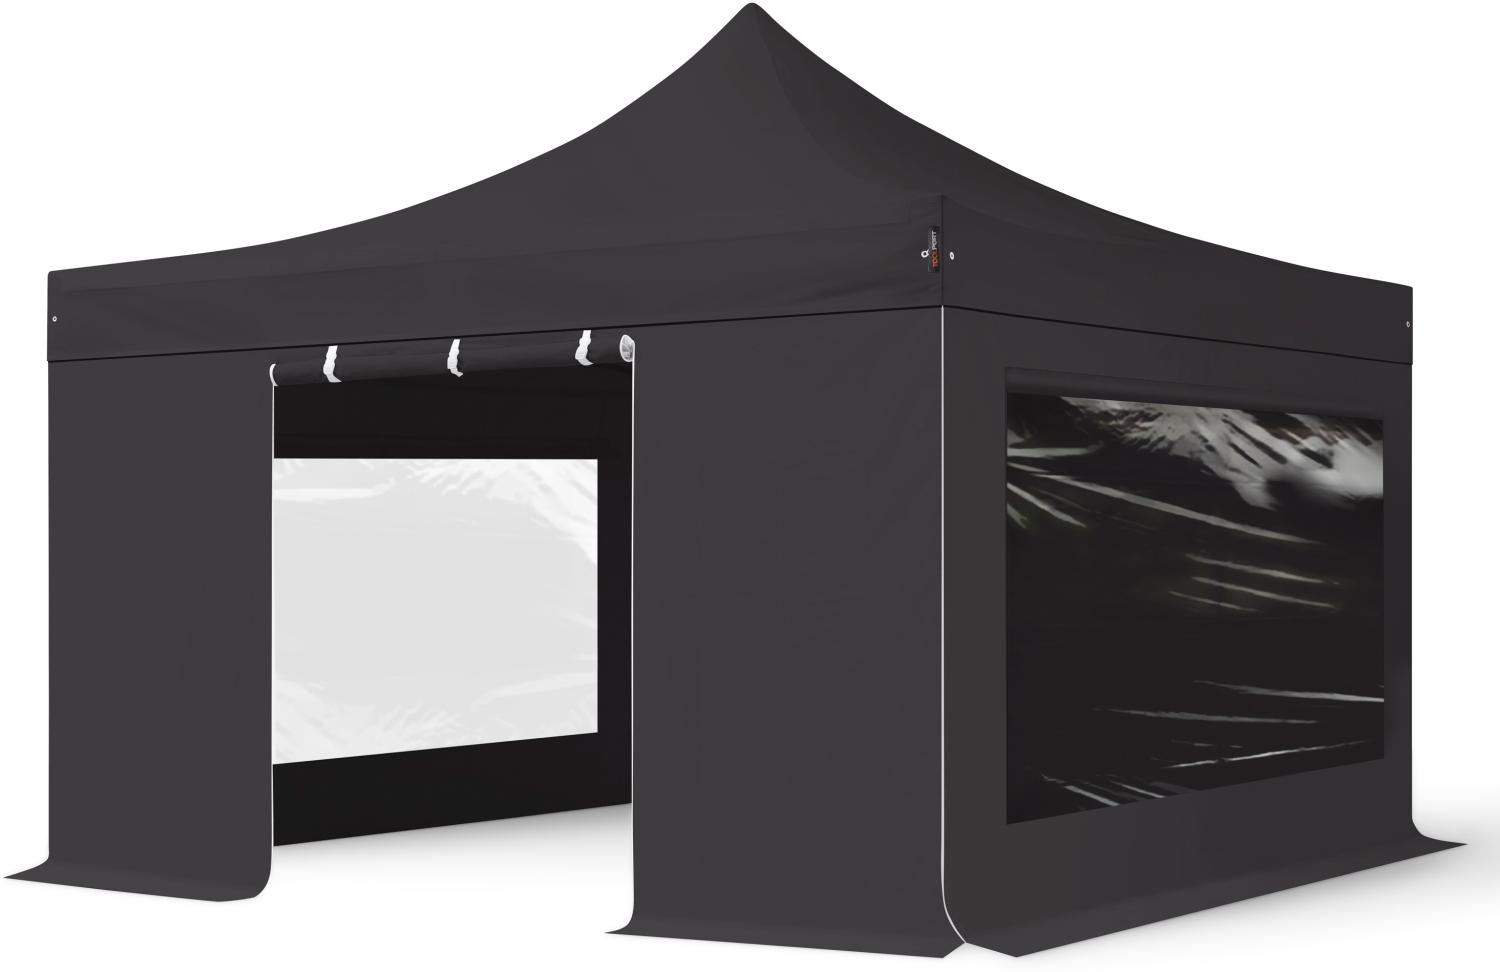 4x4 m Faltpavillon PROFESSIONAL Alu 40mm, Seitenteile mit Panoramafenstern, schwarz Bild 1